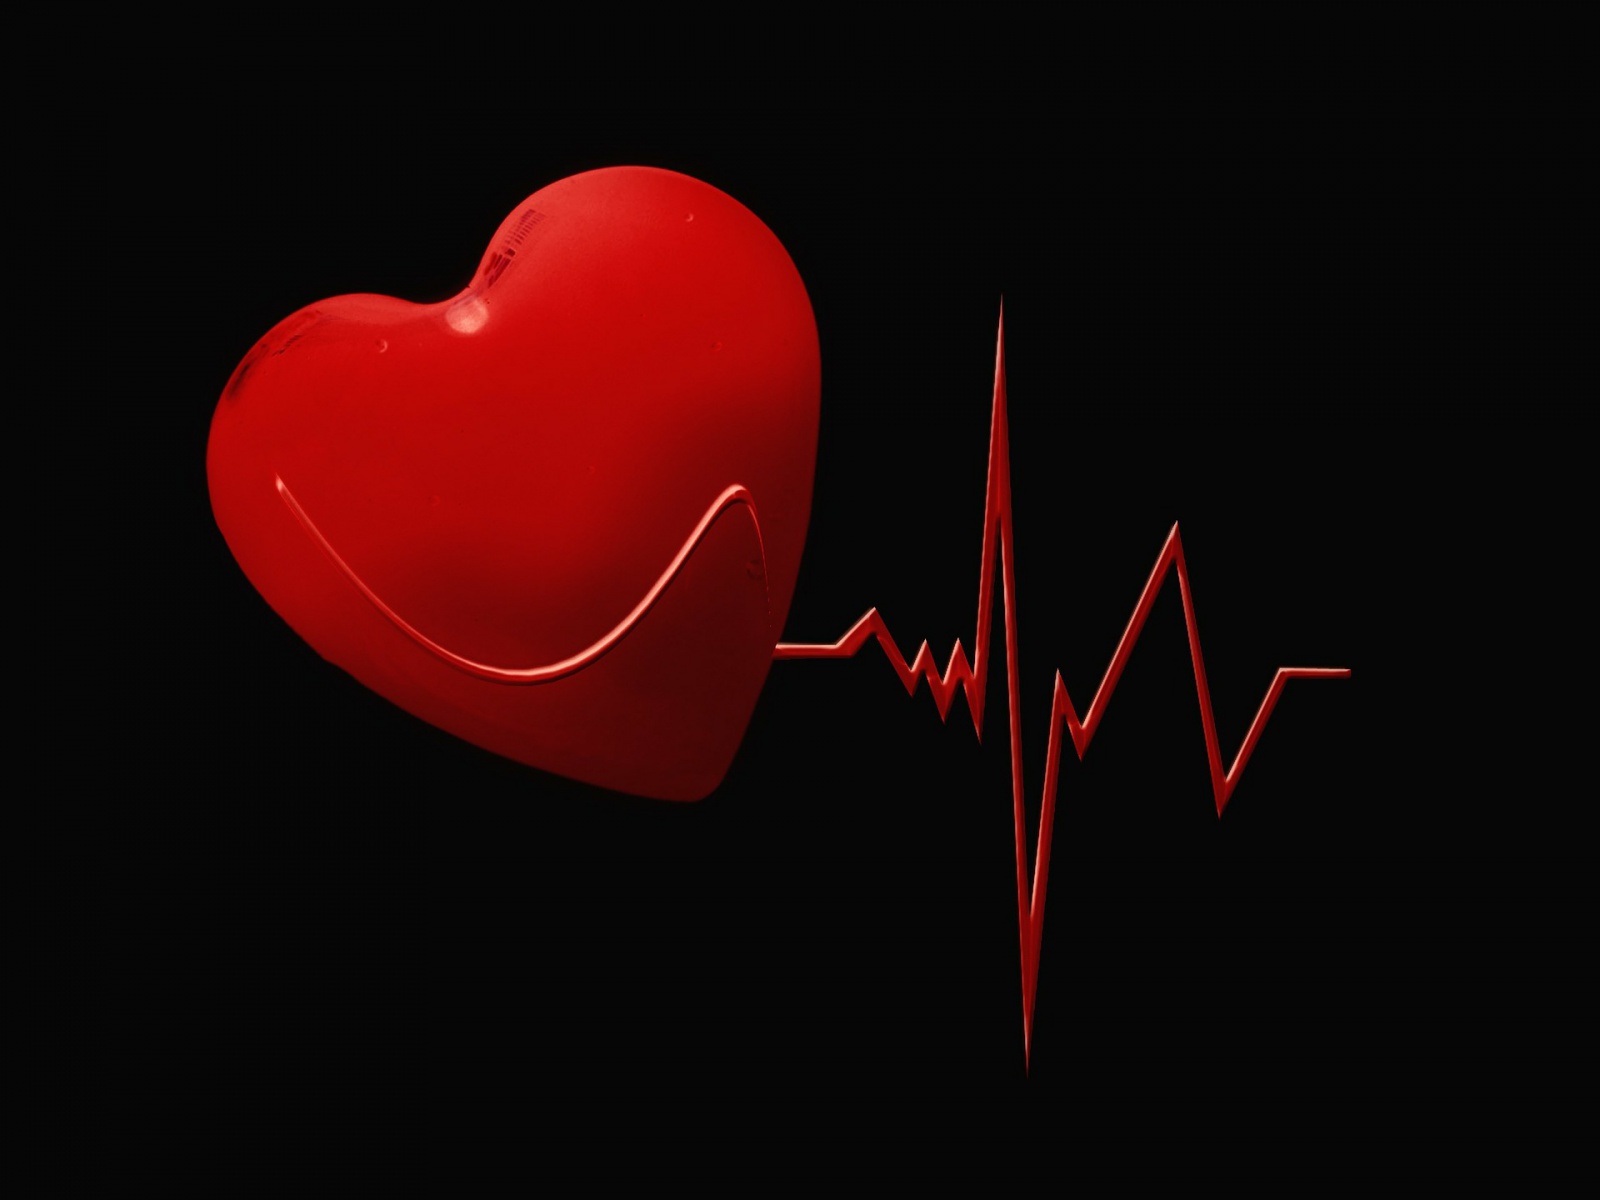 Podstawy budowy i funkcjonowania serca